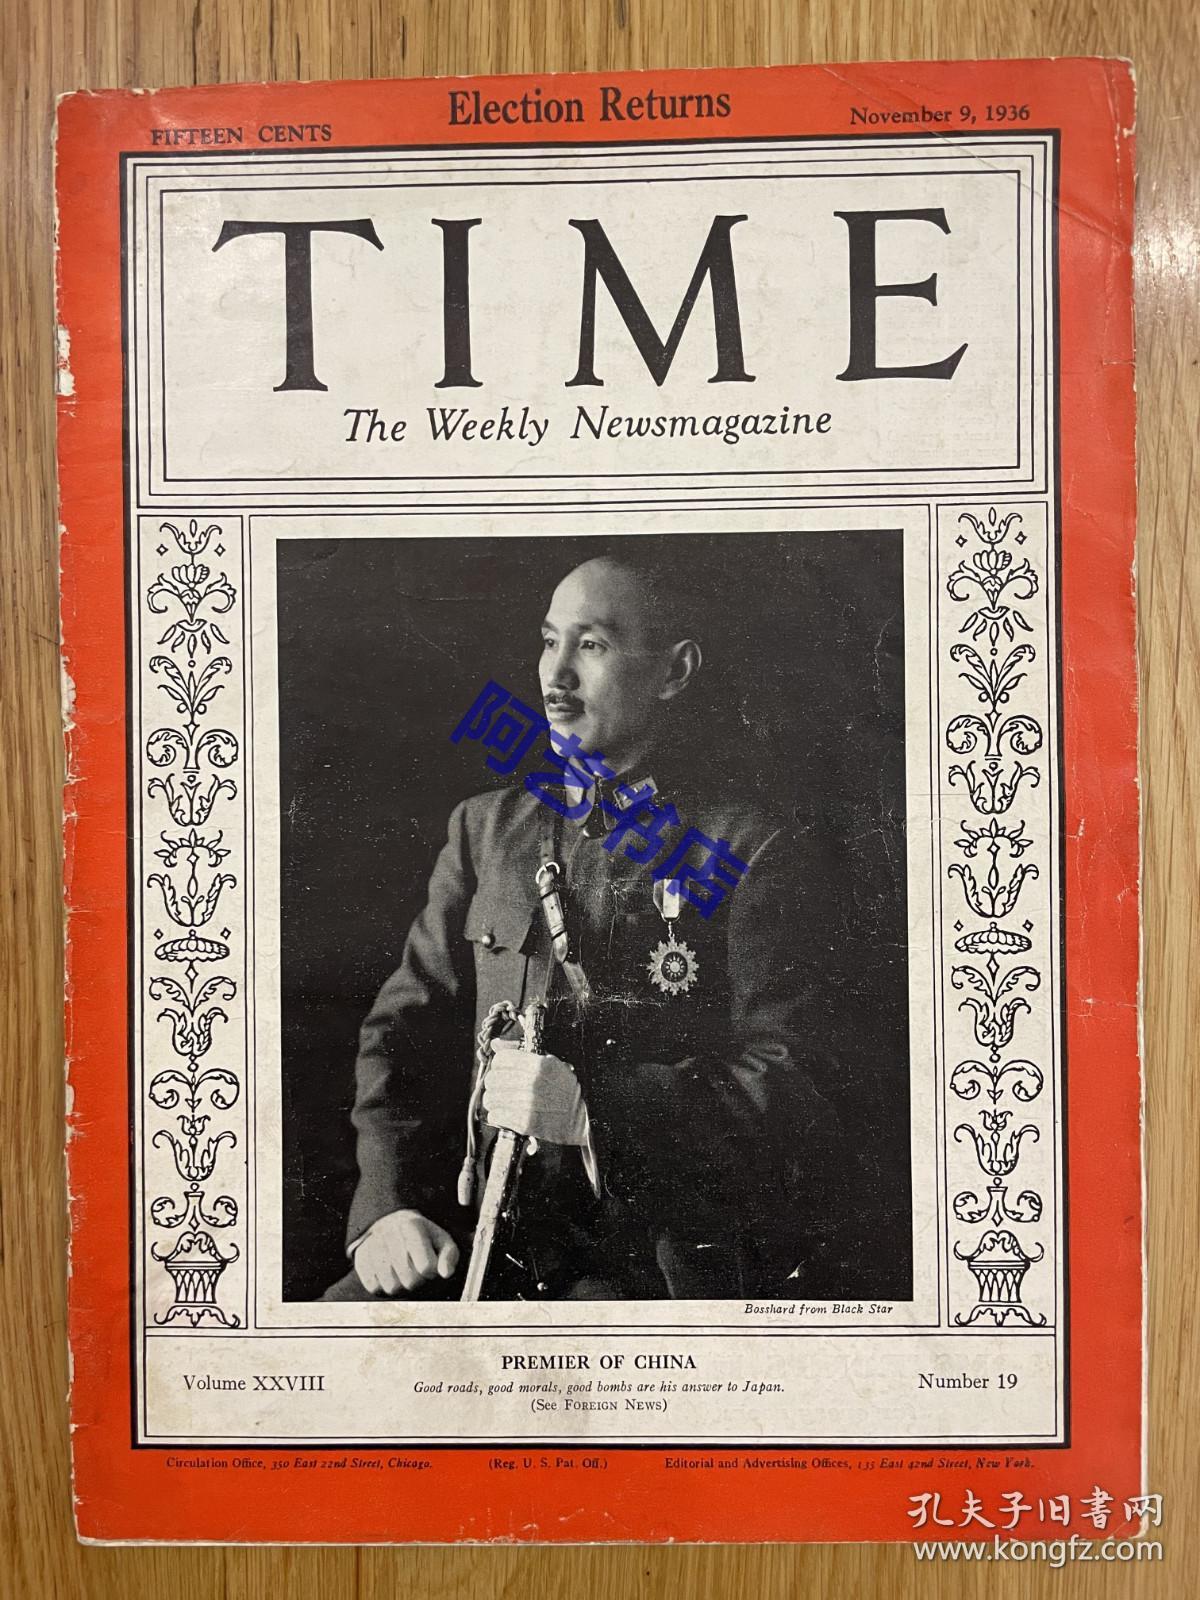 【现货】时代周刊杂志 TIME MAGAZINE，1936年11月9日，封面 “ 蒋介石”， 珍贵的历史资料。